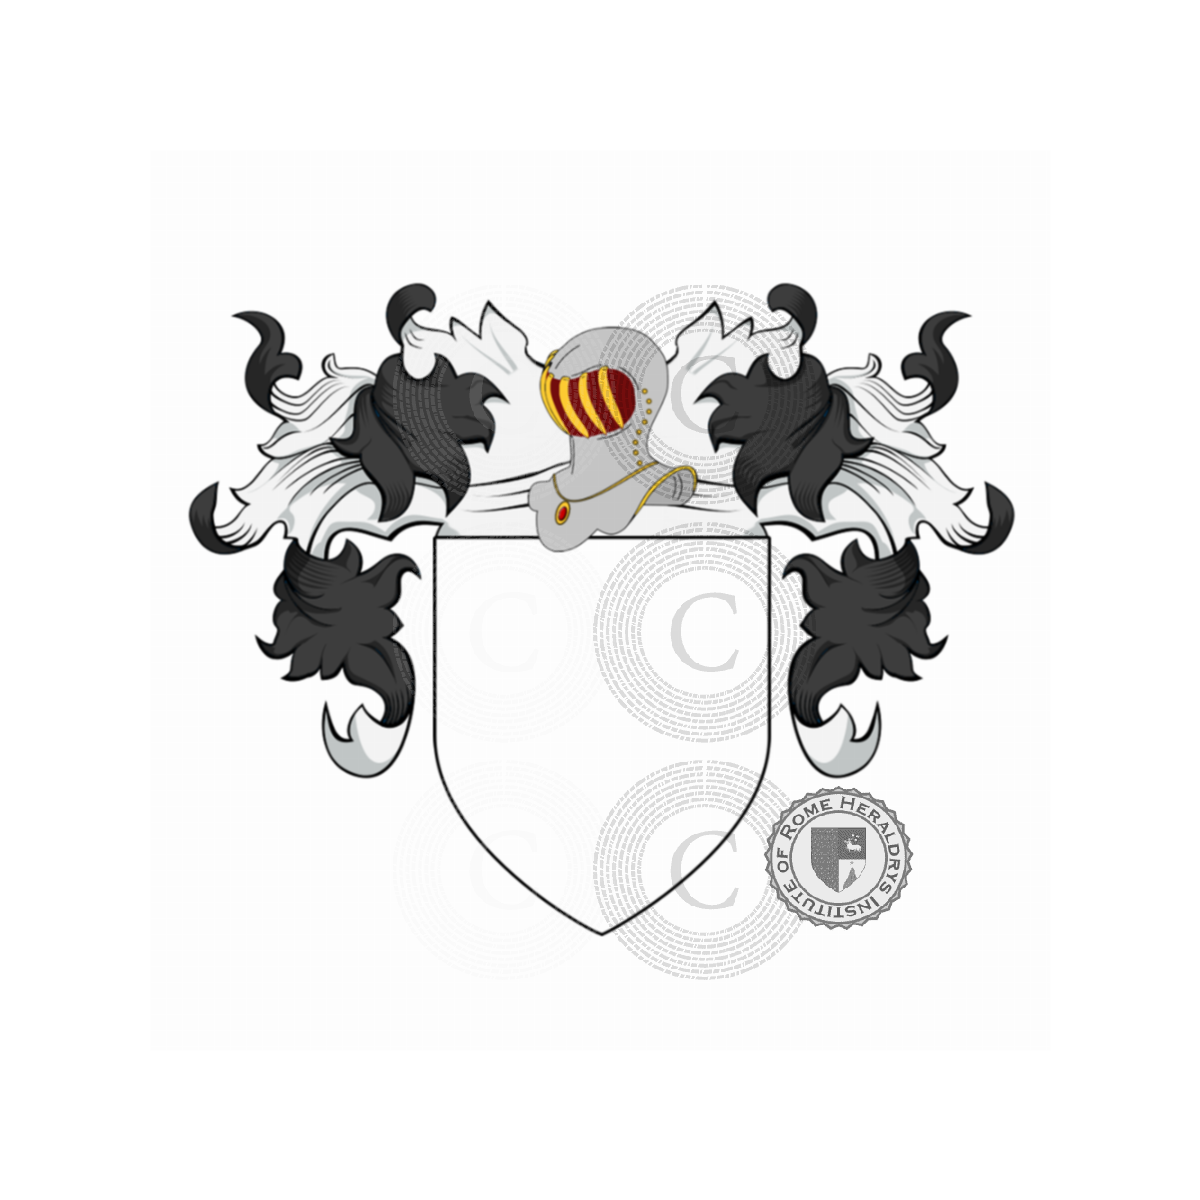 Wappen der FamilieLanfranchi, Franchi Lanfranchi,Lanfranchi Brocci Lanfreducci,Lanfranchi Lanfreducci